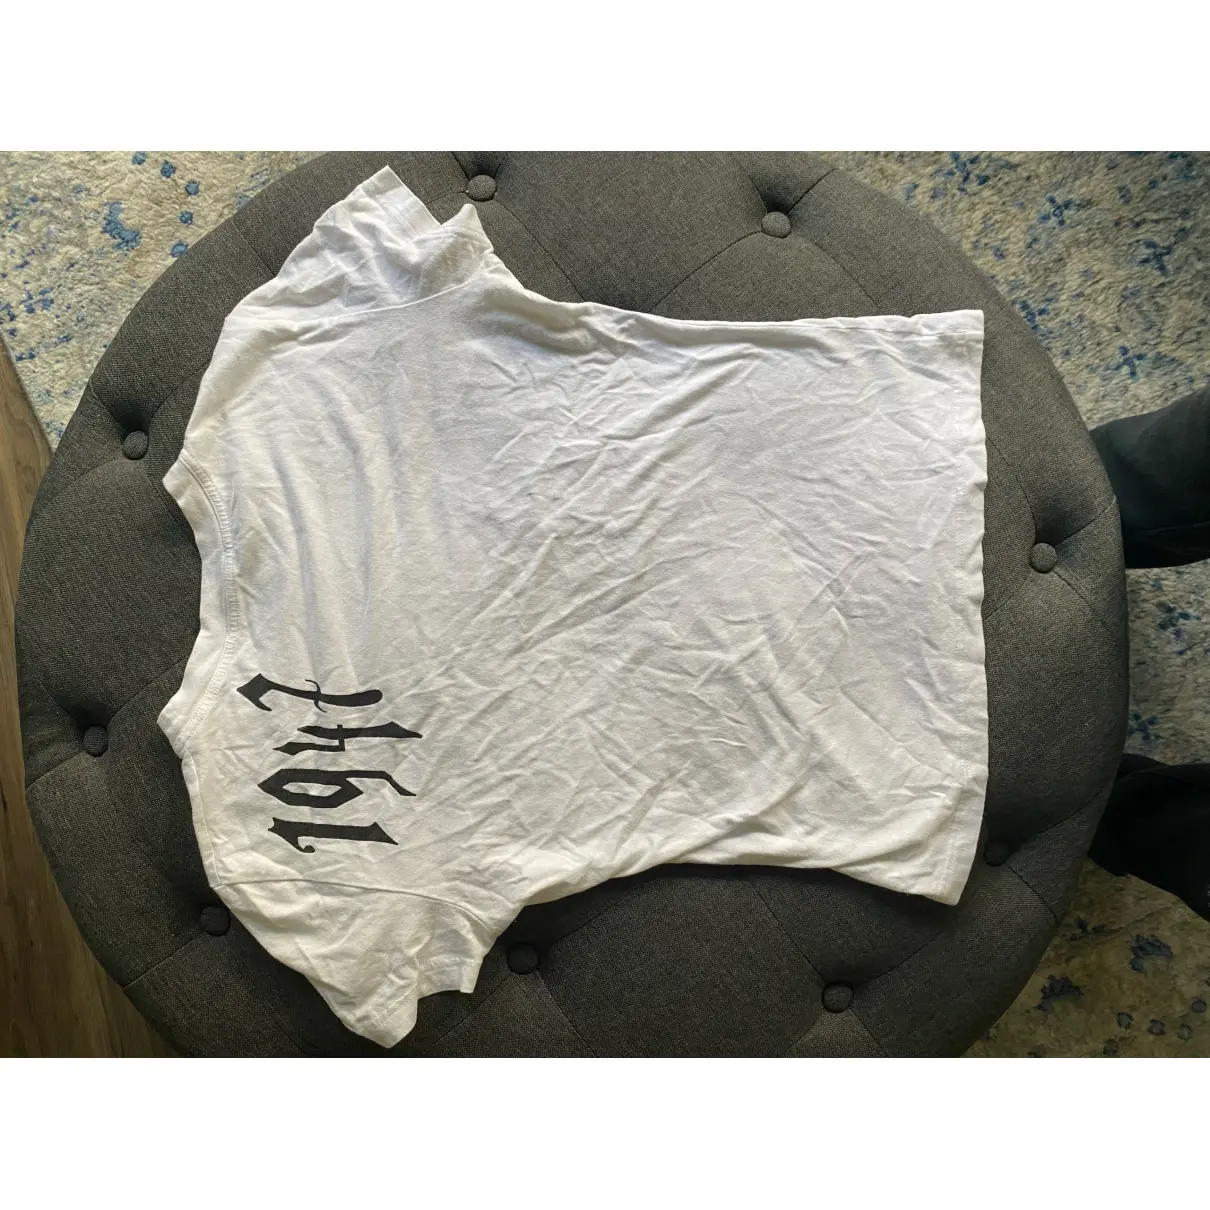 Buy Dior T-shirt online - Vintage